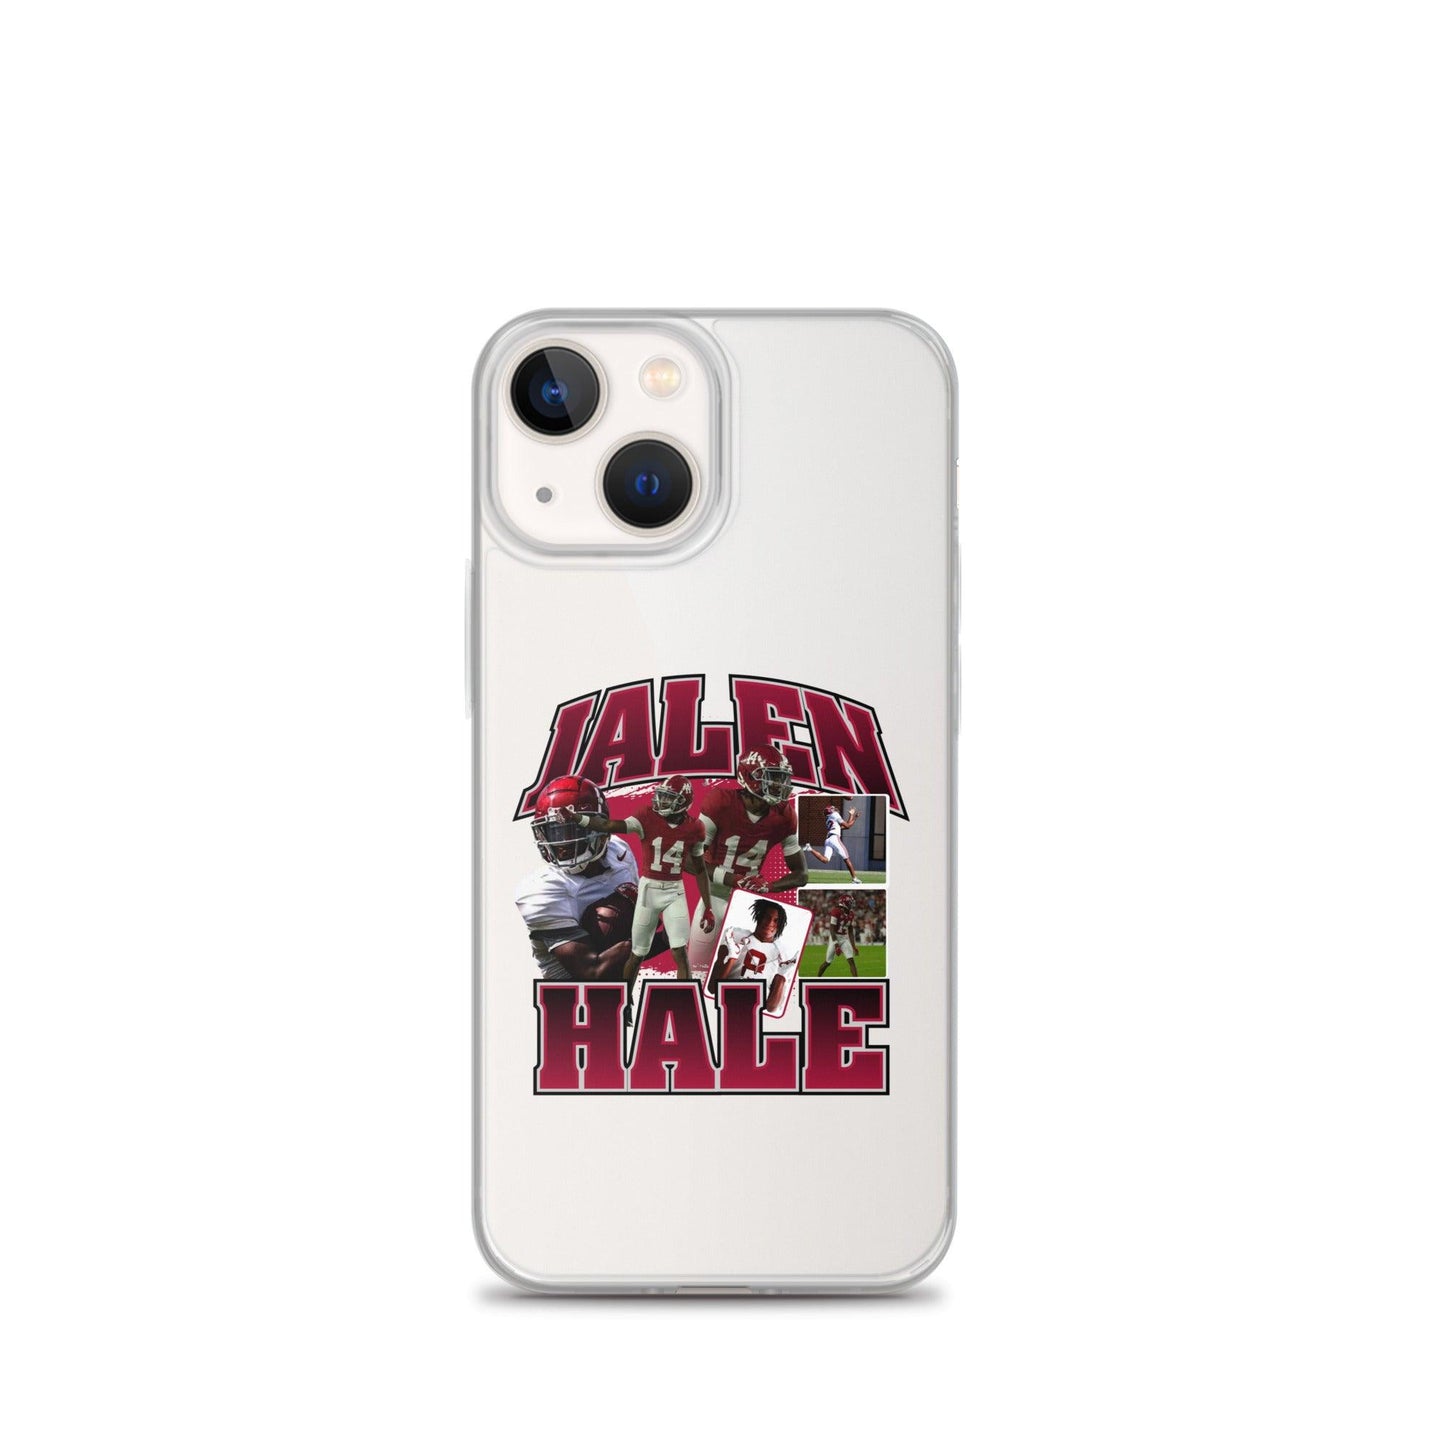 Jalen Hale "Vintage" iPhone® - Fan Arch